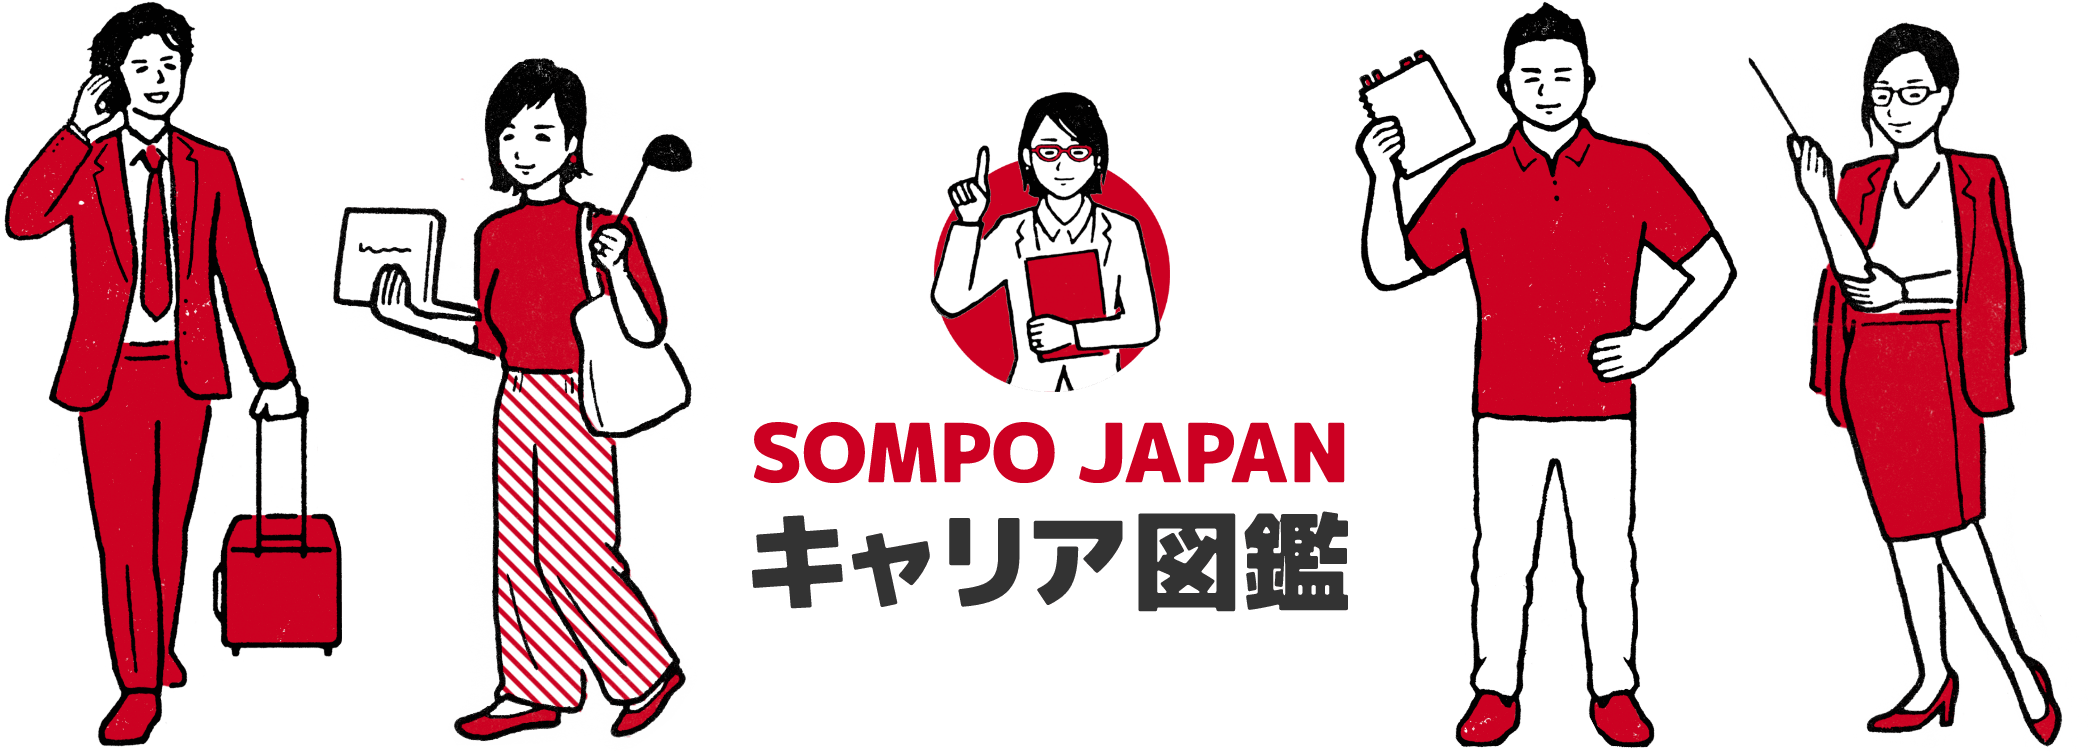 SOMPO JAPAN キャリア図鑑